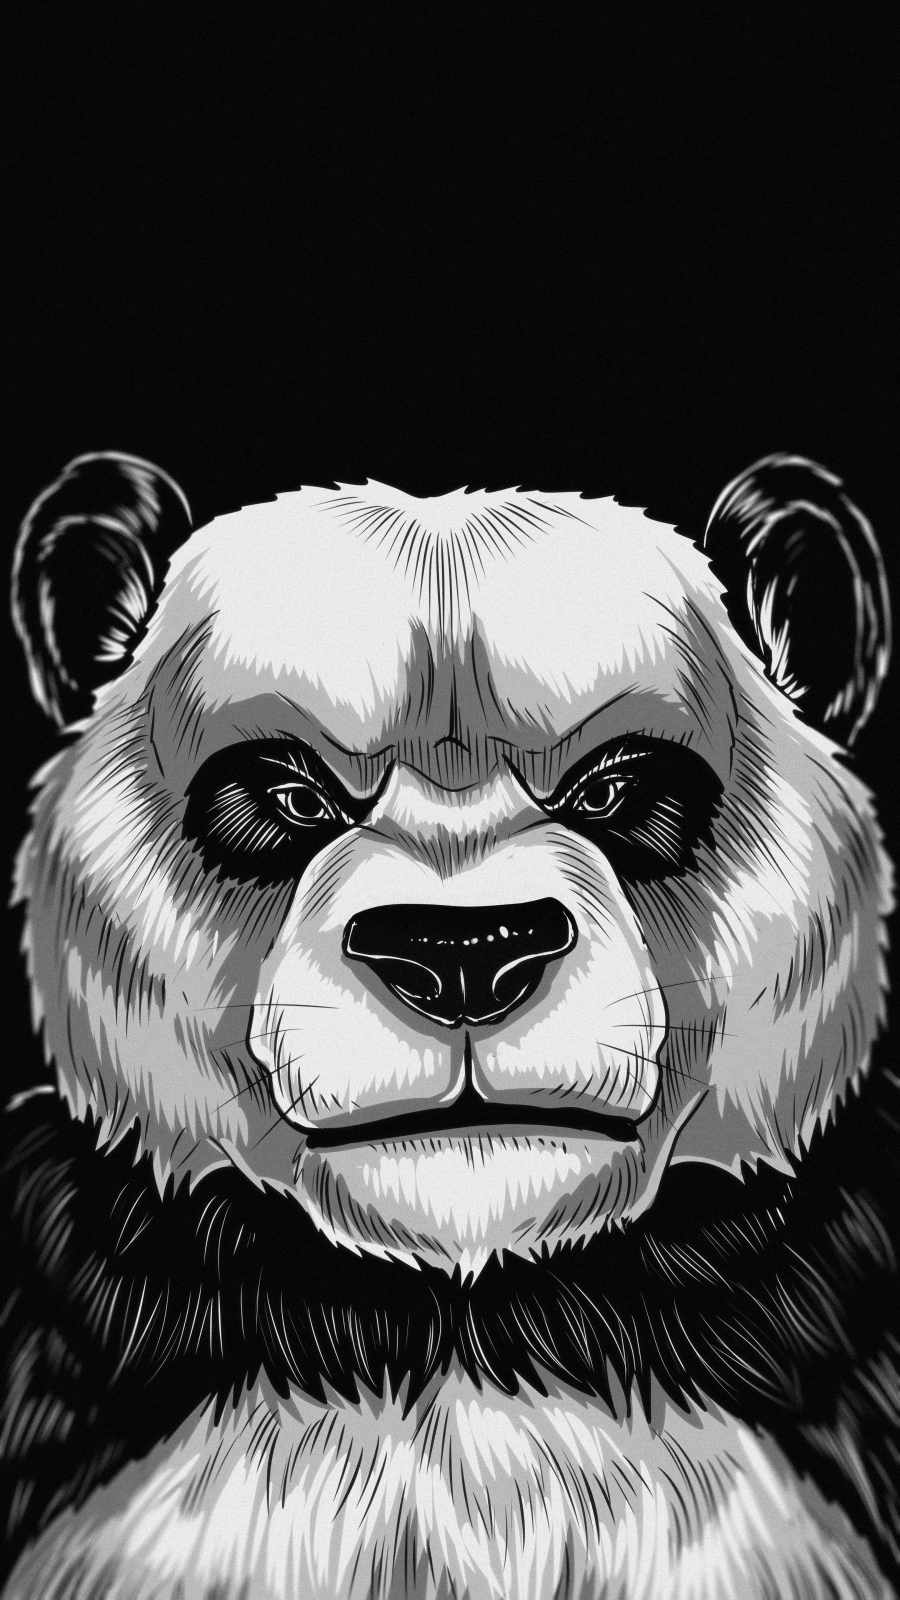 Angry Panda IPhone Wallpaper Wallpaper, iPhone Wallpaper. iPhone wallpaper image, Dark art tattoo, iPhone wallpaper